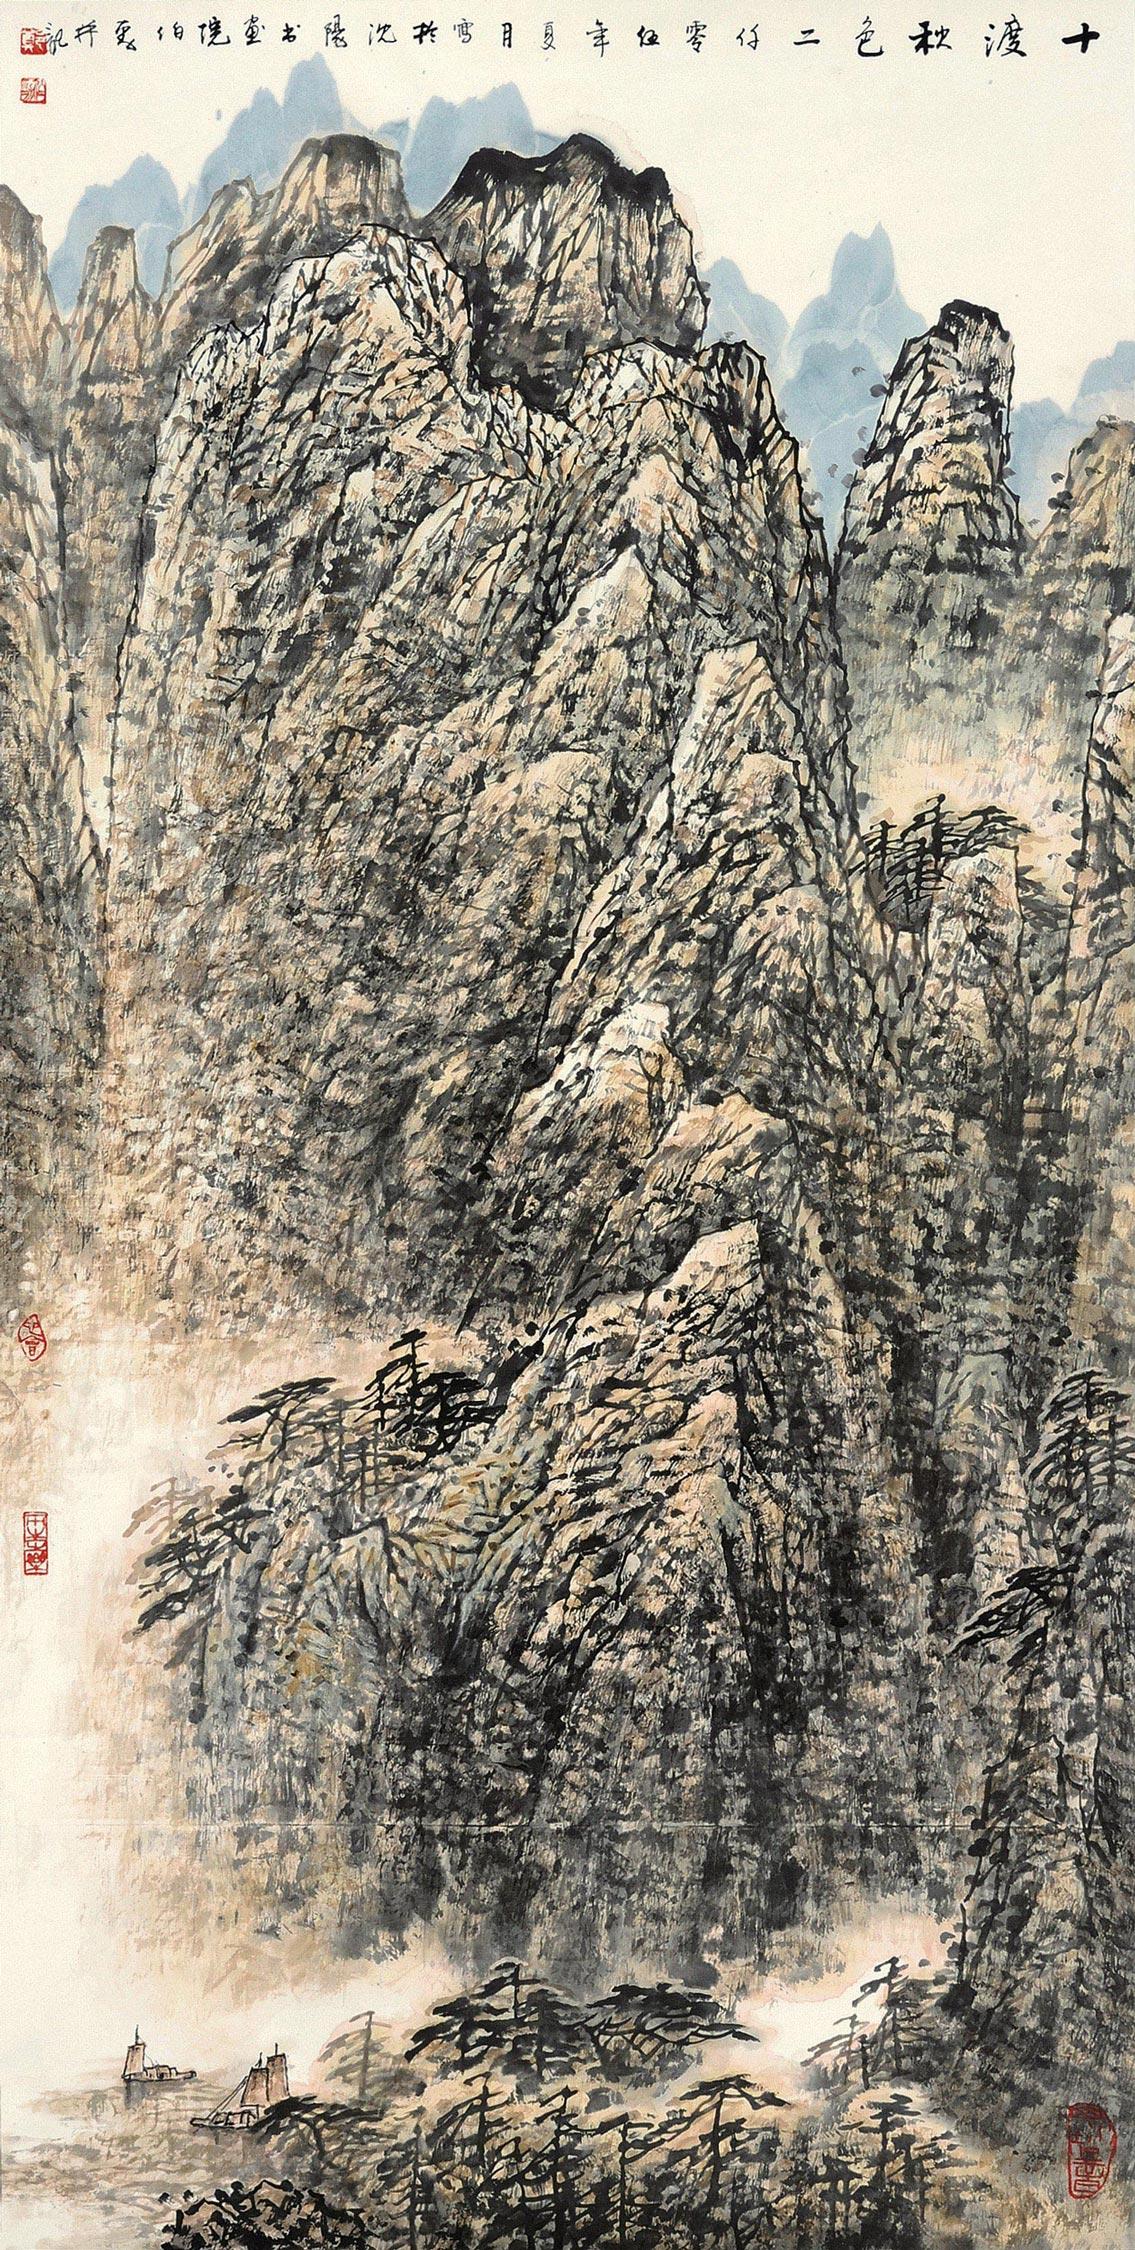 北京银座国际拍卖有限公司 2012秋季首届拍卖会 中国当代书画(一)